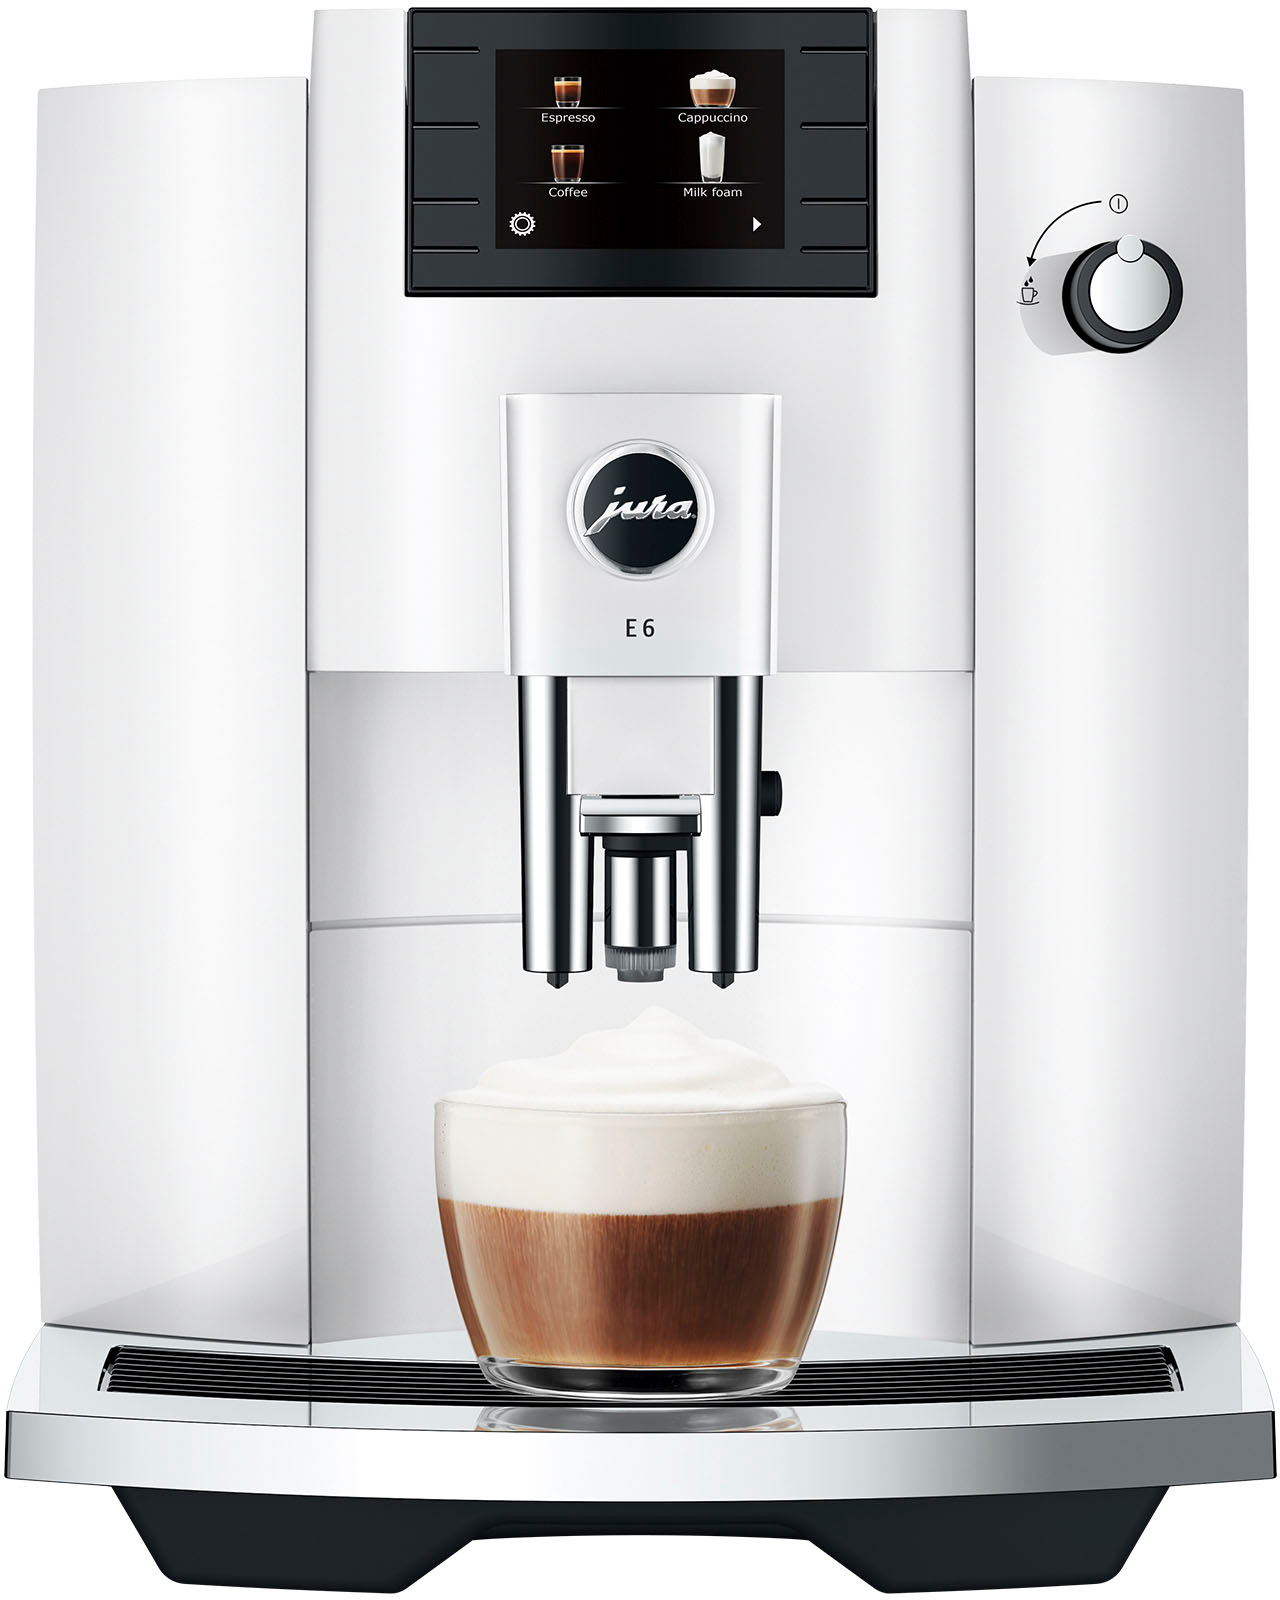 Back to Basics Silver Espresso & Cappuccino Machines